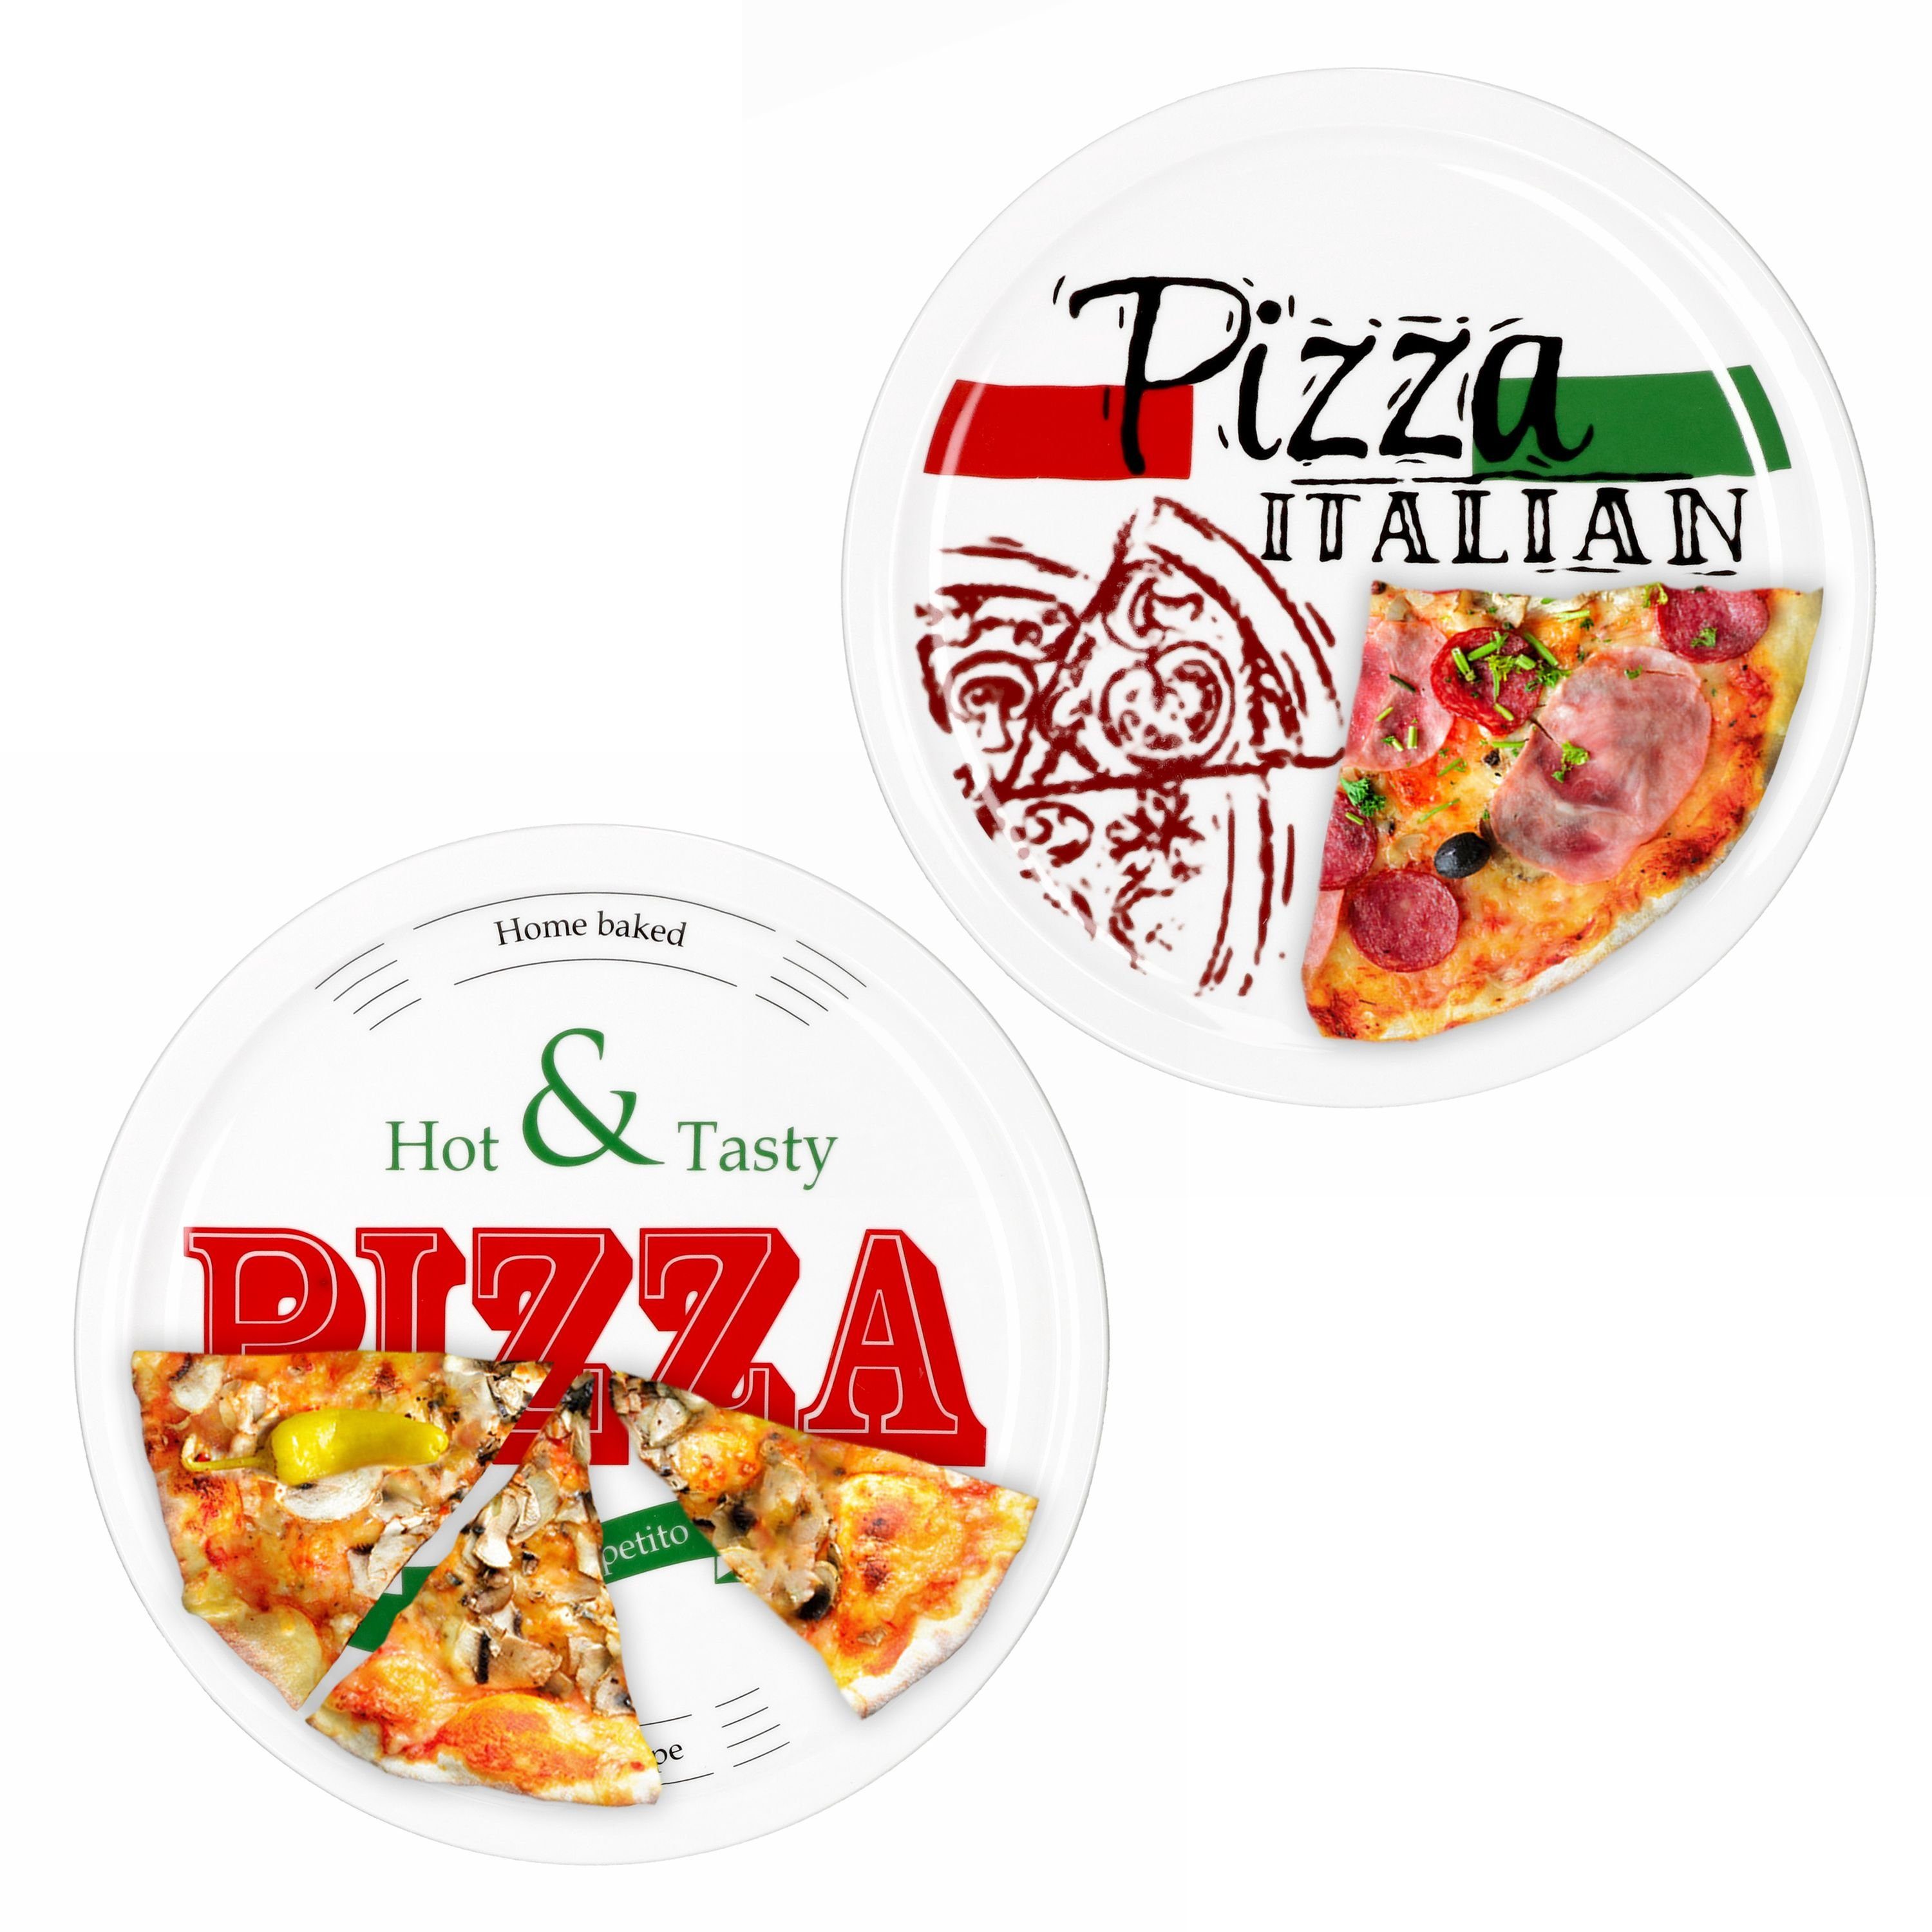 2er Pizzateller + Tasty Set 28cm Italian MamboCat Pizza Pizzateller Hot 1x & 1x